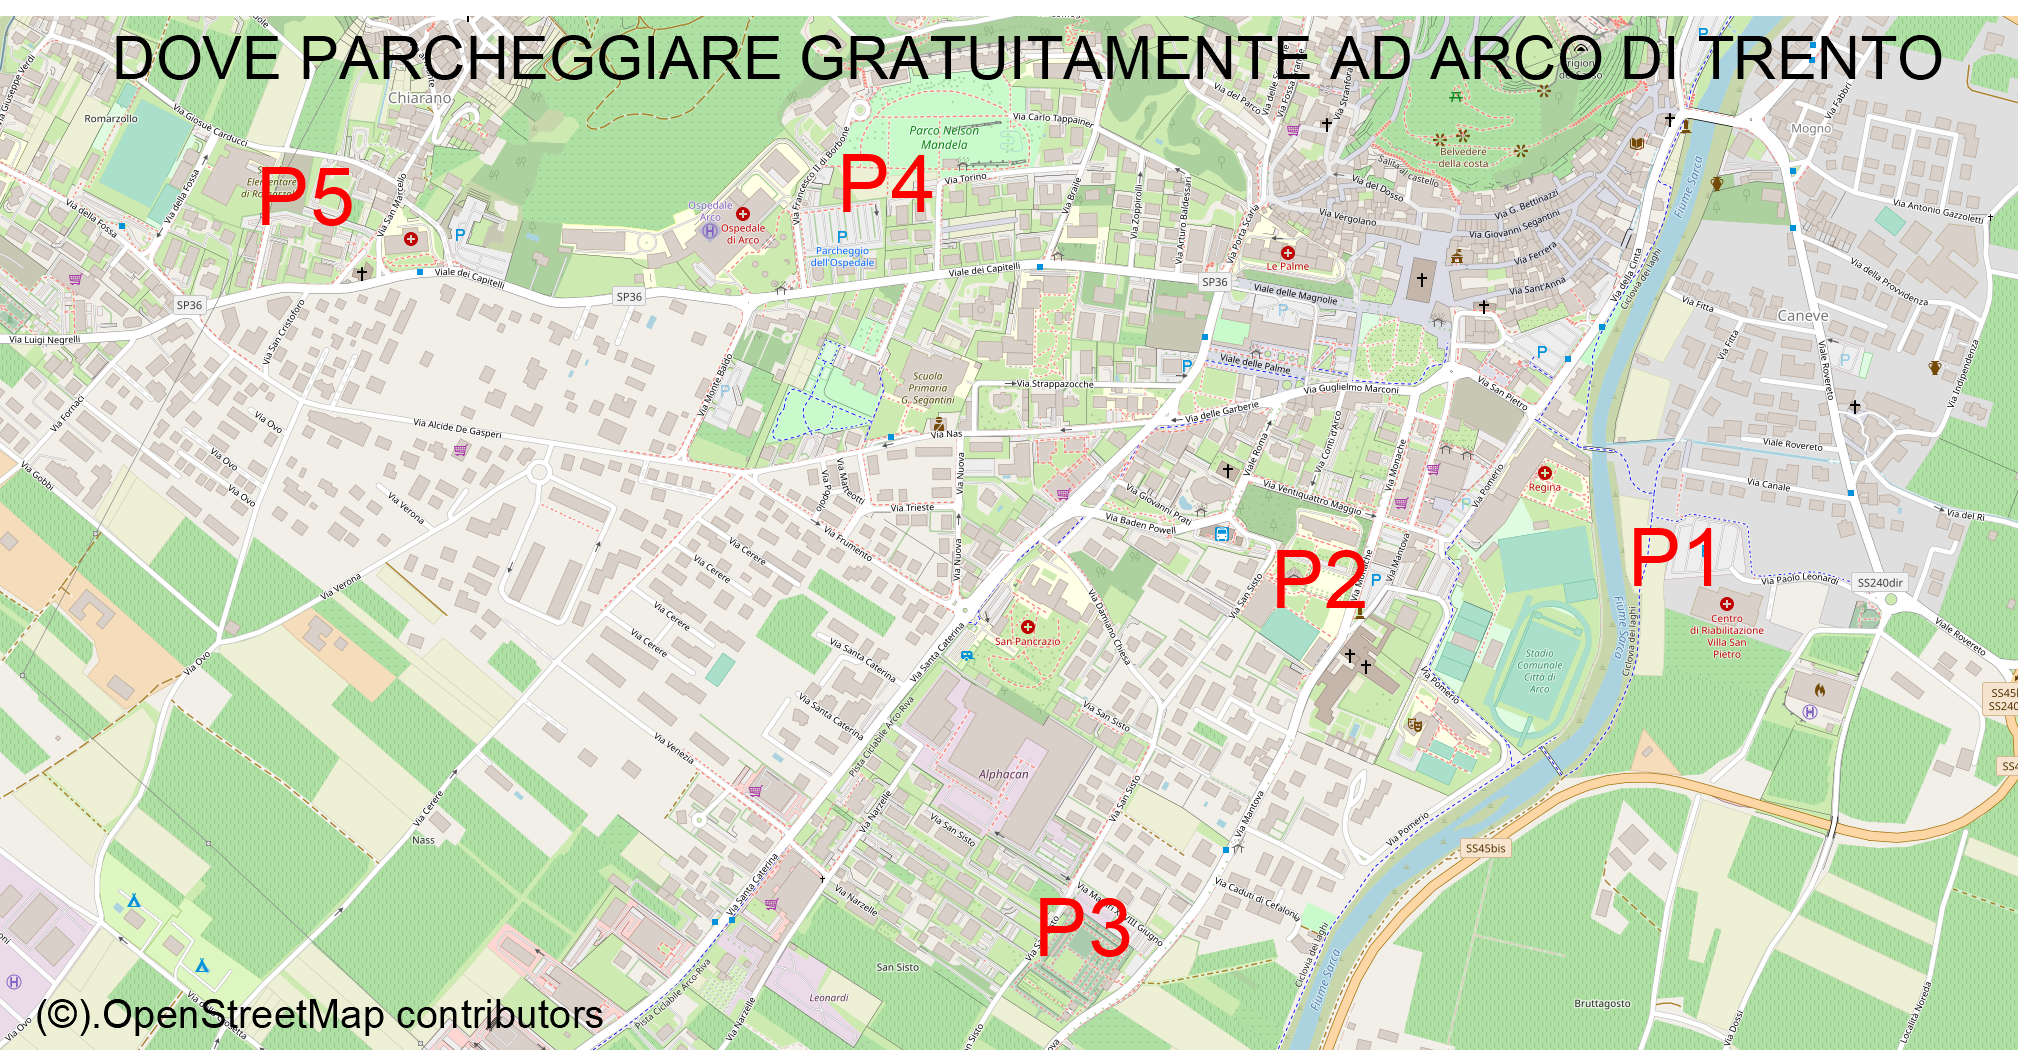 Parcheggi gratuiti Arco di Trento